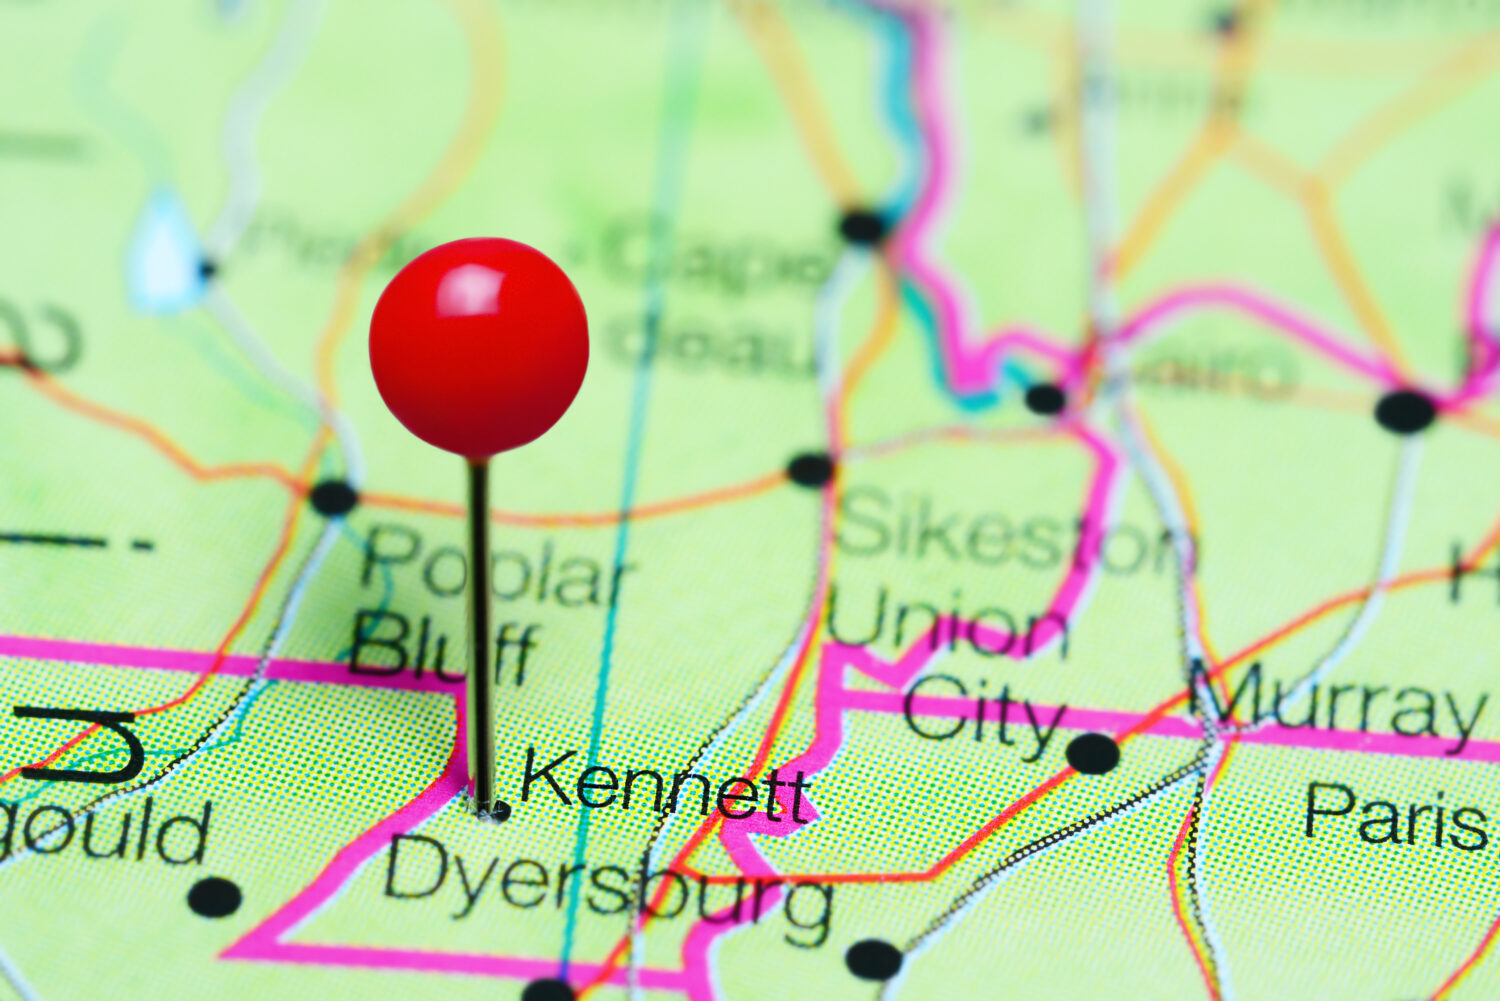 Kennett appuntato su una mappa del Missouri, USA